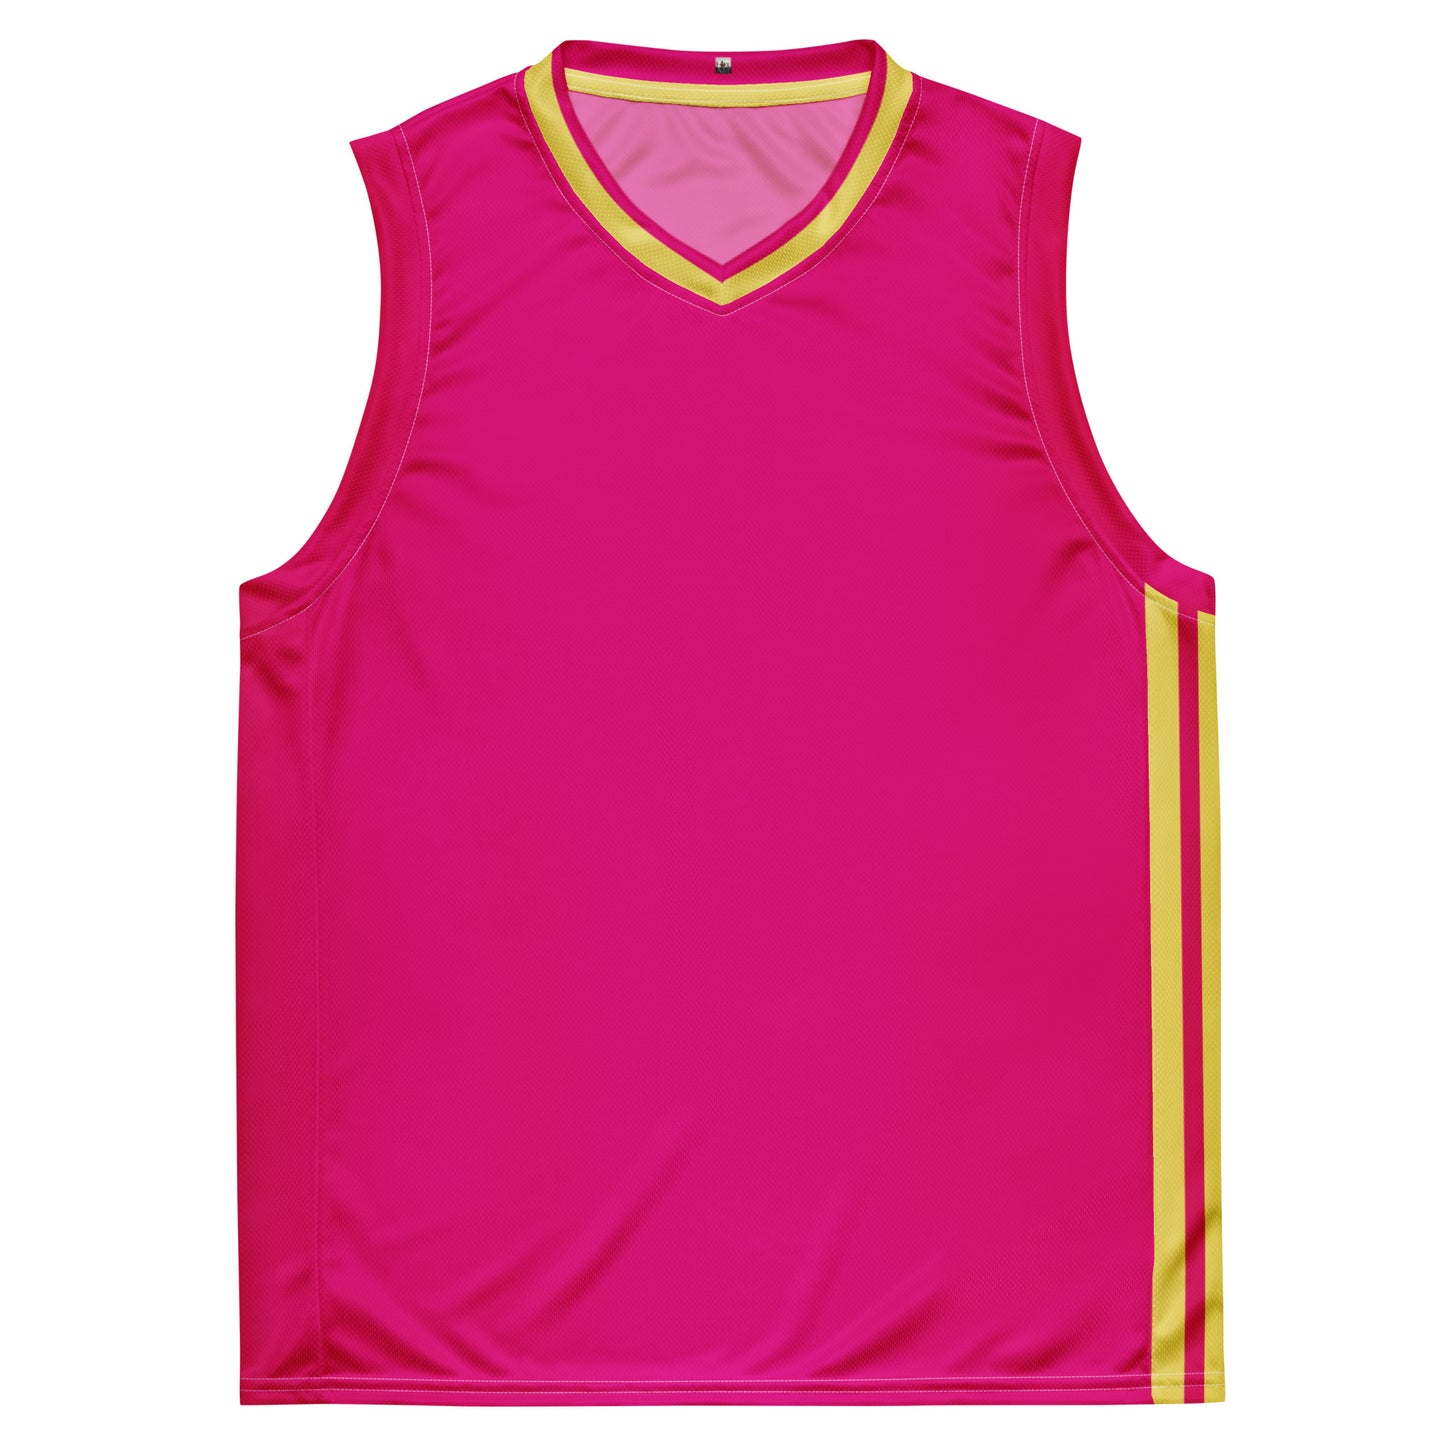 Snooty Fox Art Unisex Basketball Jersey - Summertime Pink